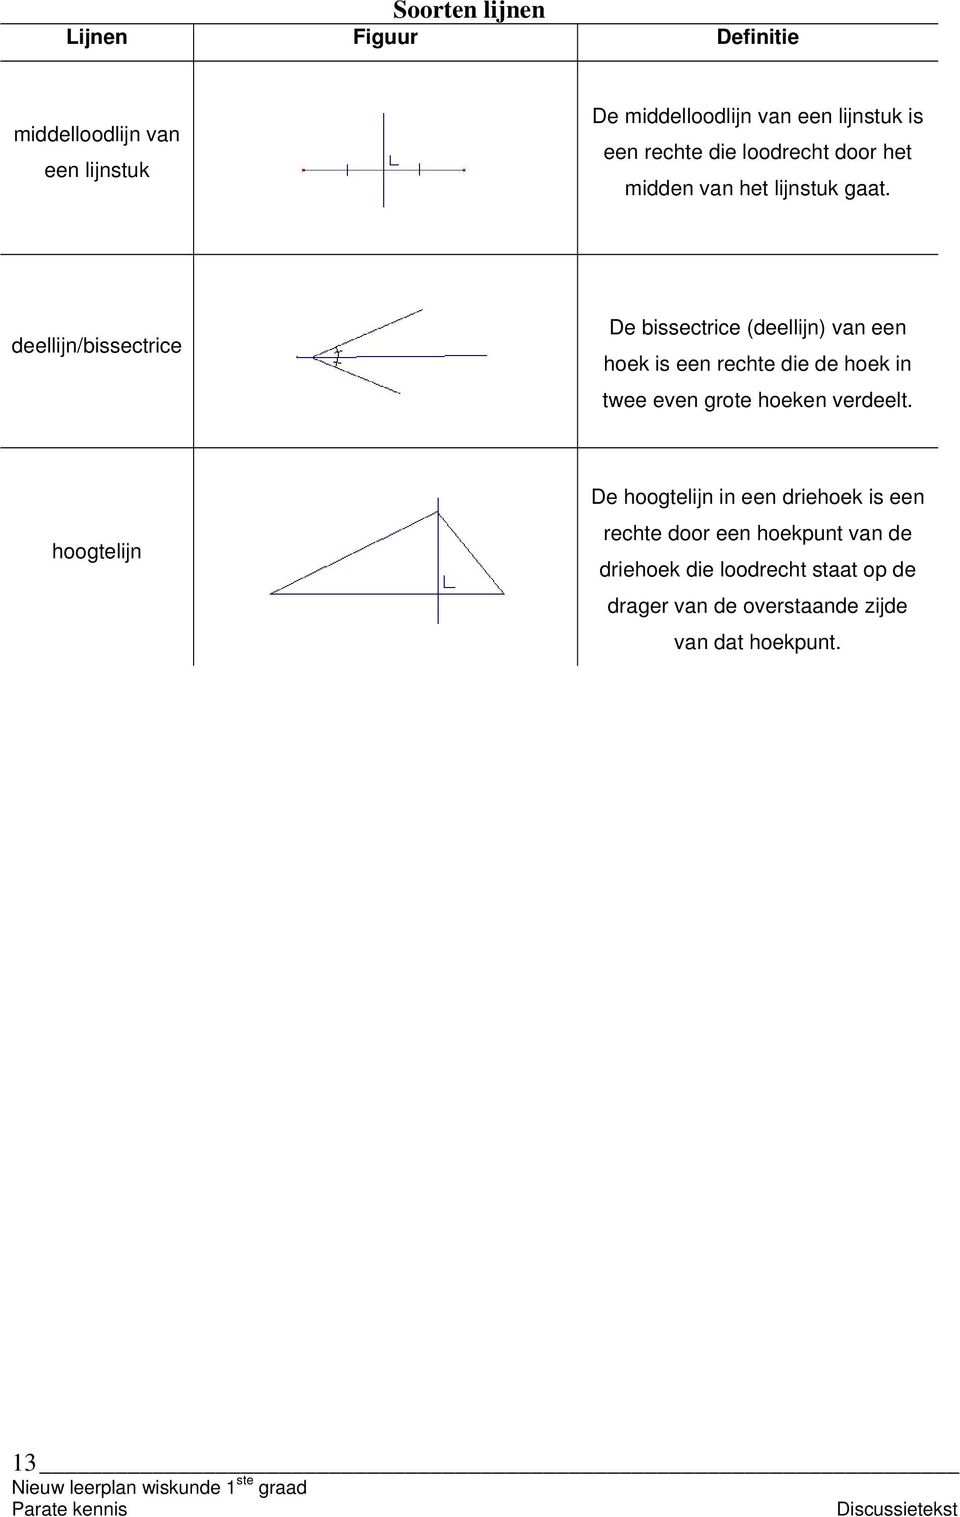 deellijn/issectrice De issectrice (deellijn) vn een hoek is een rechte die de hoek in twee even grote hoeken